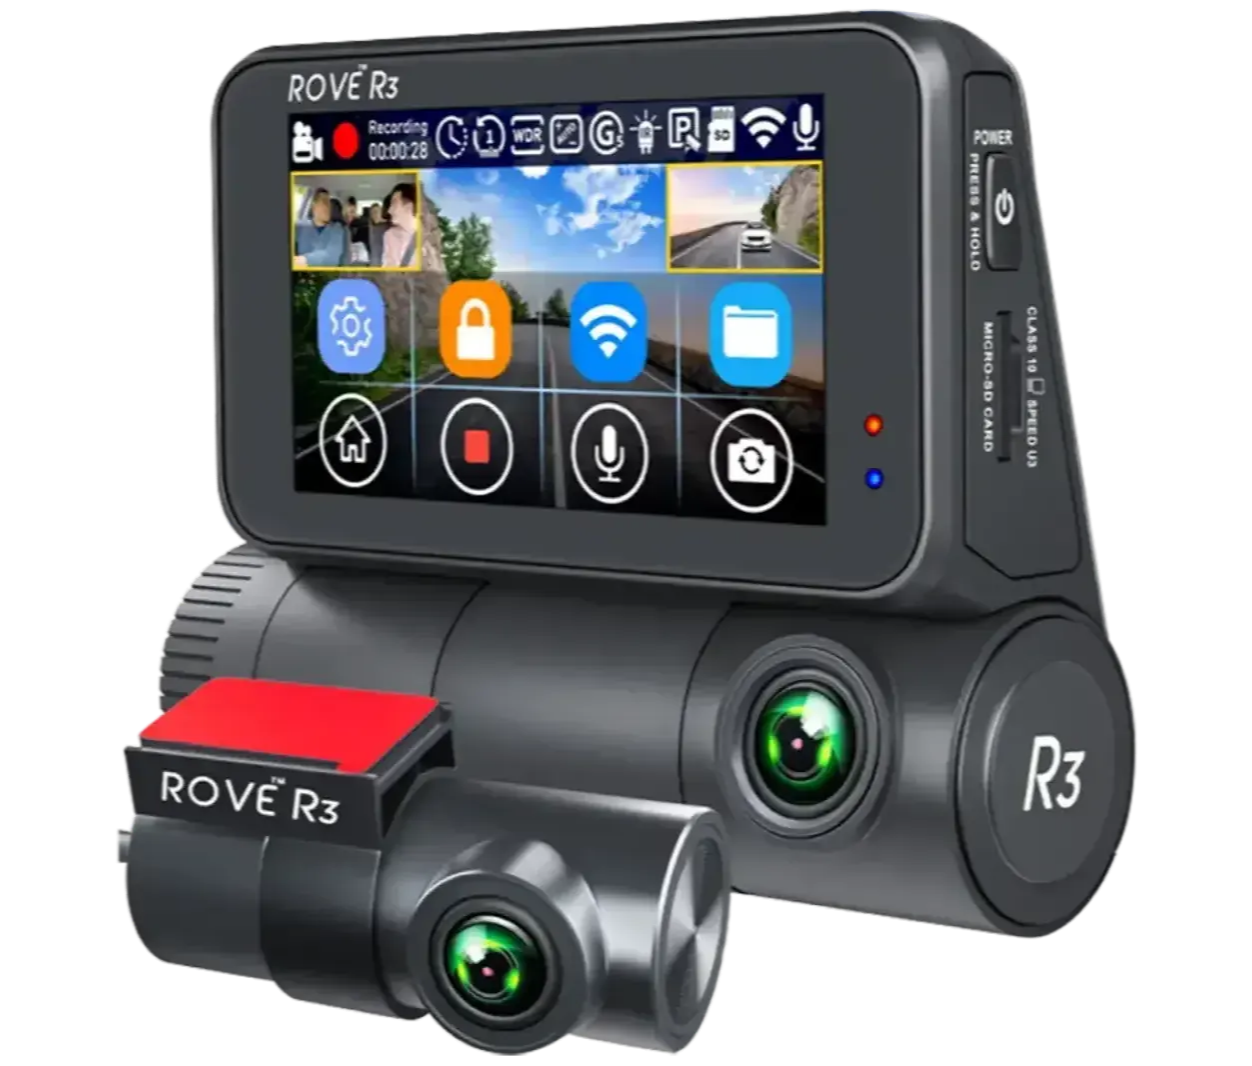 VIOFO A139 Pro vs. Rove 3 3-Channel Dash Cam Comparison Review